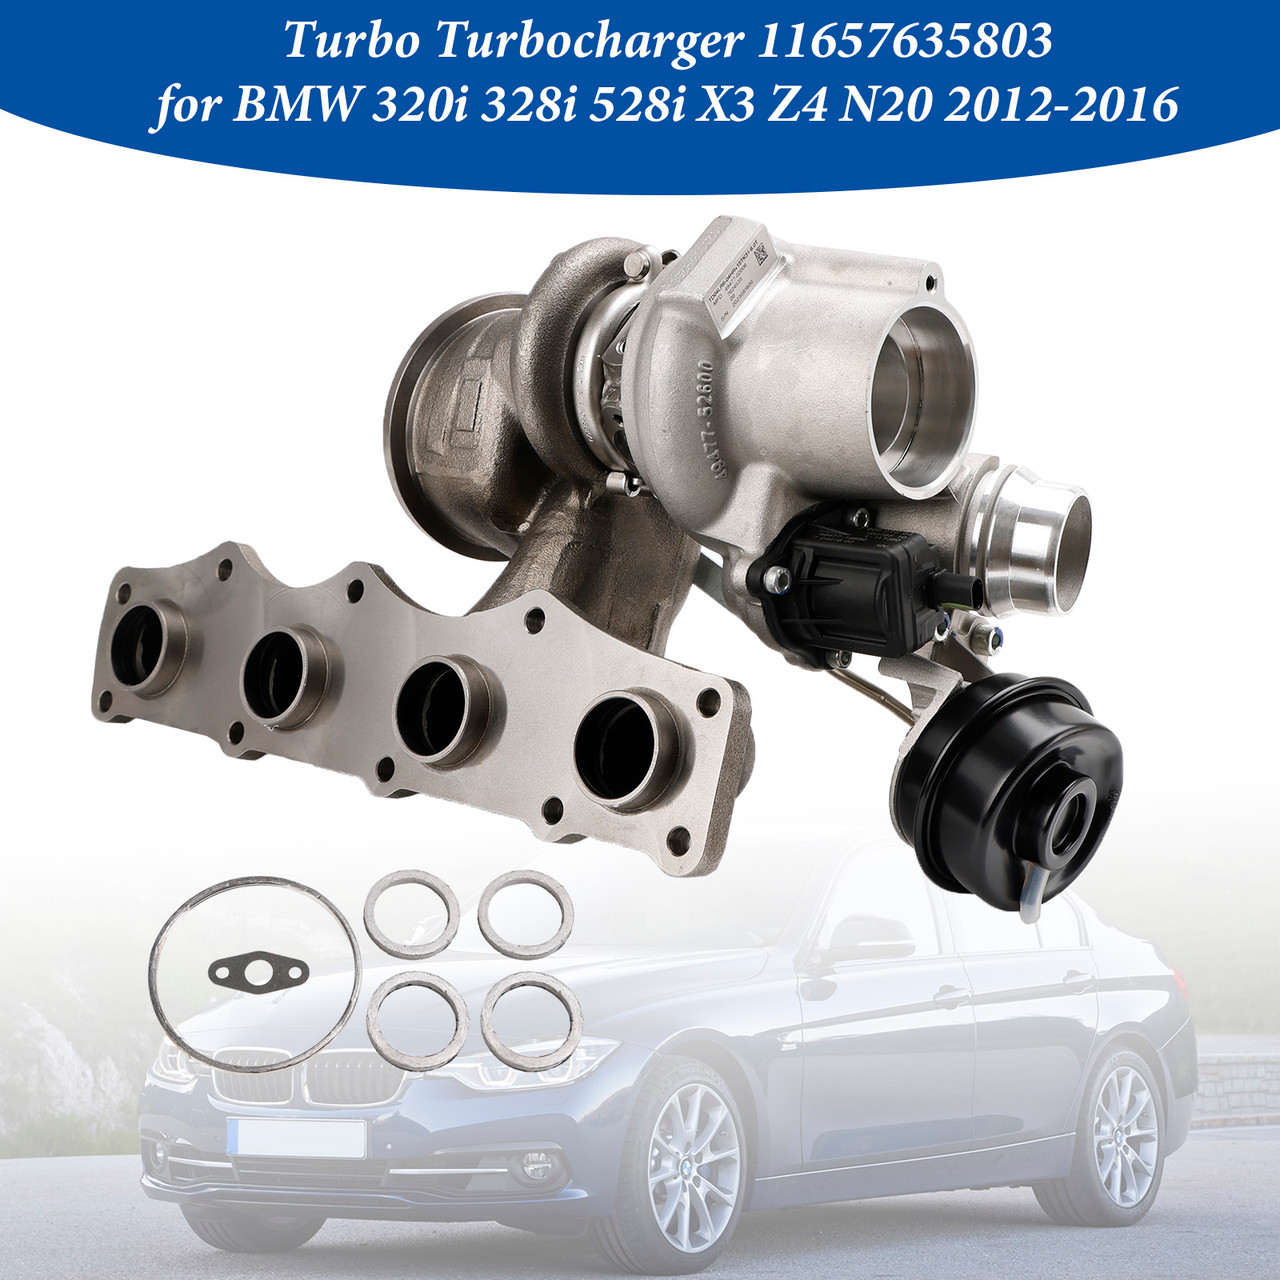 Turbo Turbocharger 11657635803 for BMW 320i 328i 528i X3 Z4 N20 2012-2016